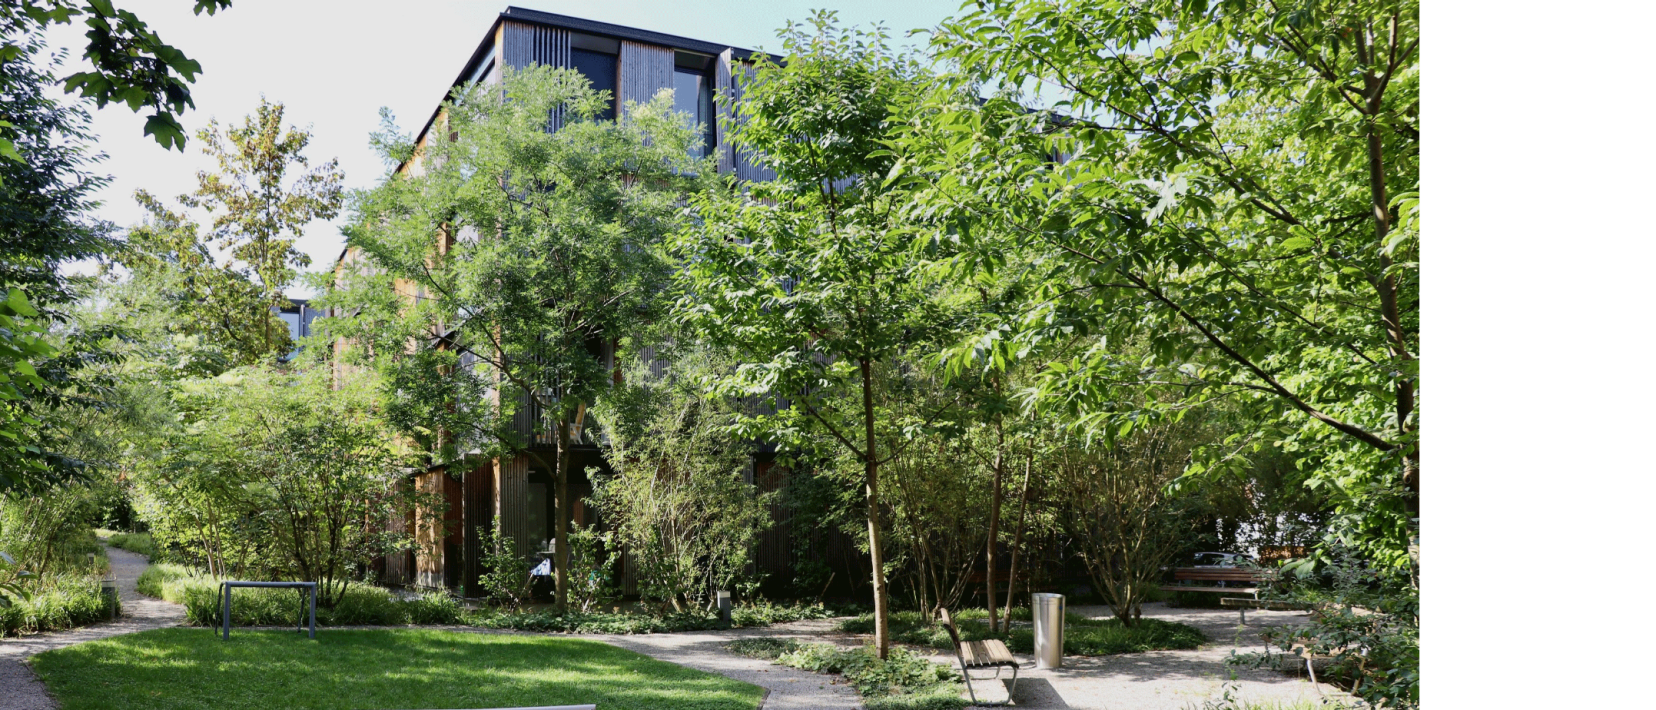 Vielfältig Grünfläche mit kleiner Rasenfläche, schattenspendenden Bäumen für Sitzbänke und Flächen sowie naturnah gestaltete Bereiche sind auf dem Bild der Escherpark Siedlung ersichtlich.